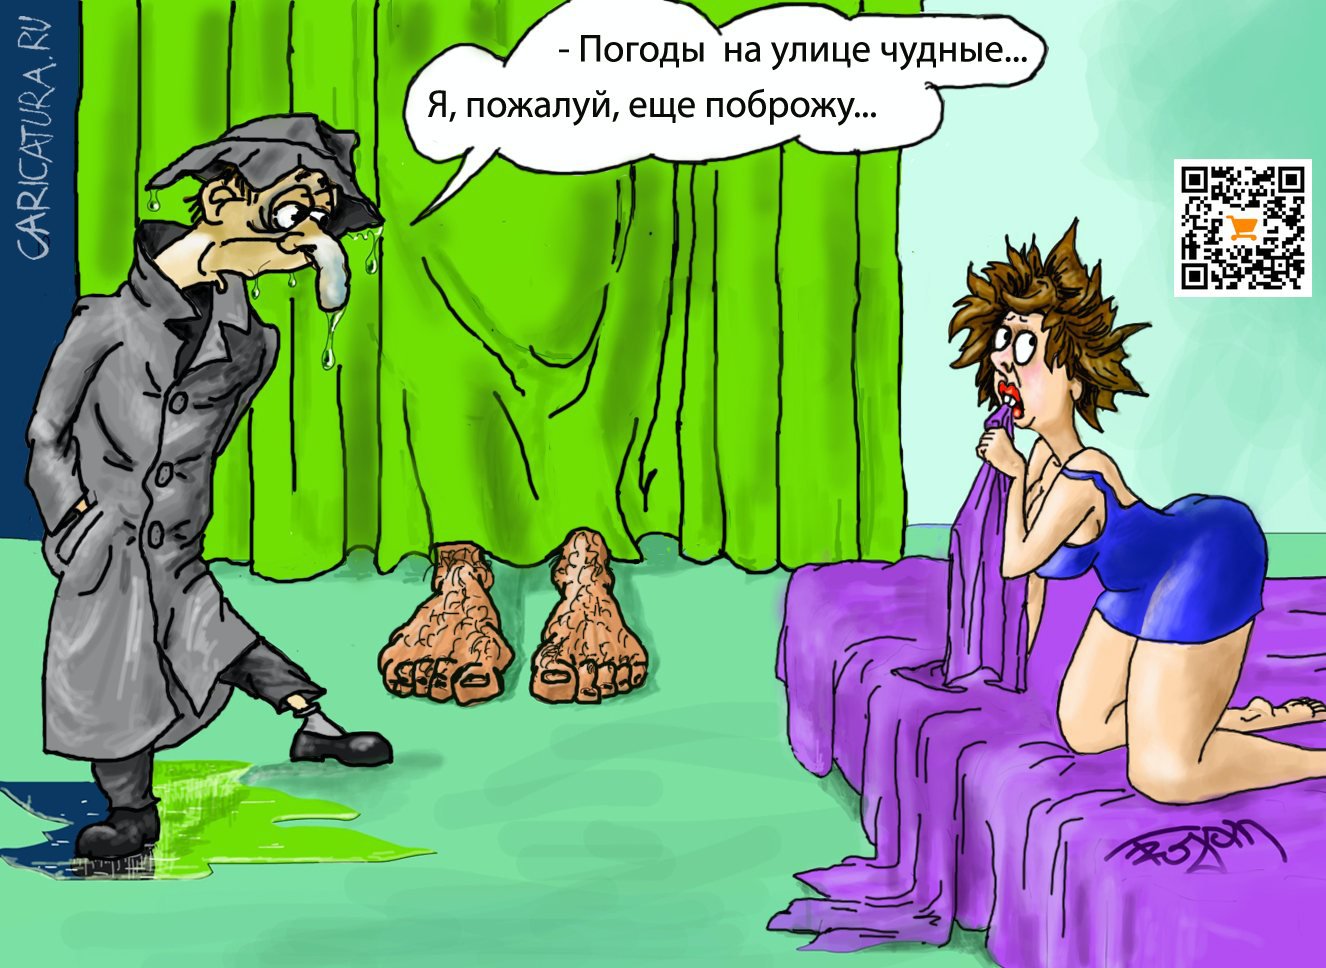 Карикатура "Разумное решение", Алек Геворгян